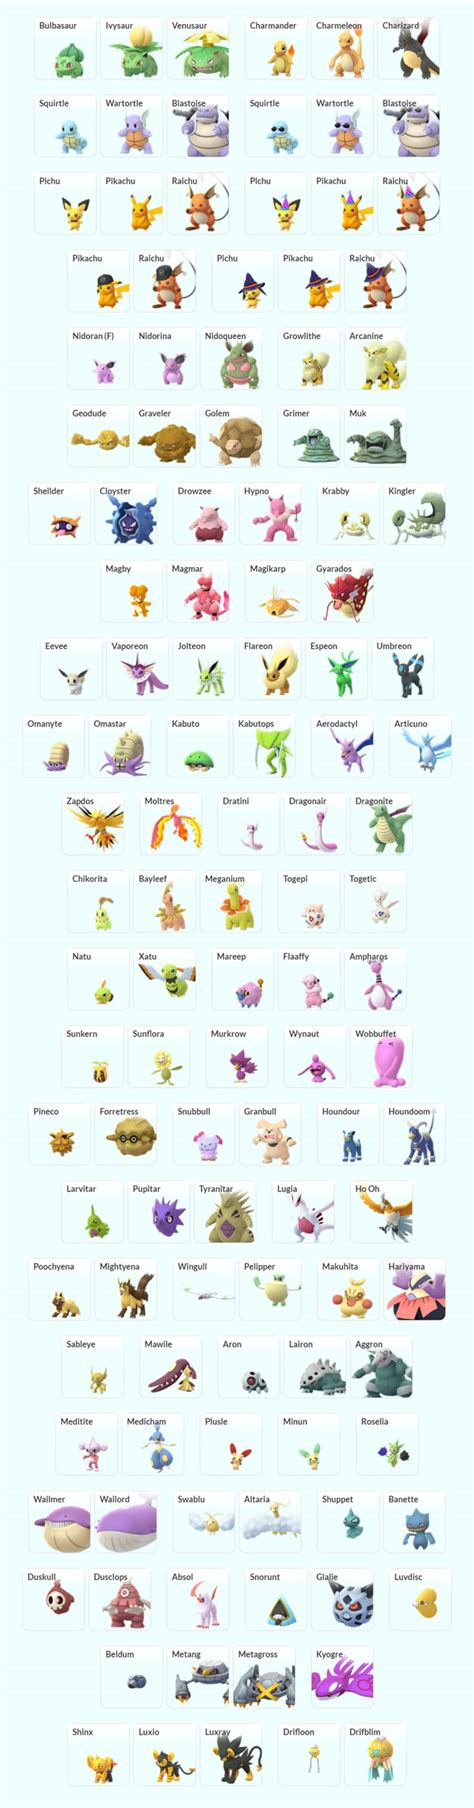 Pokemon Go Shiny Checklist All Shiny Pokemon And How To Catch Shinies